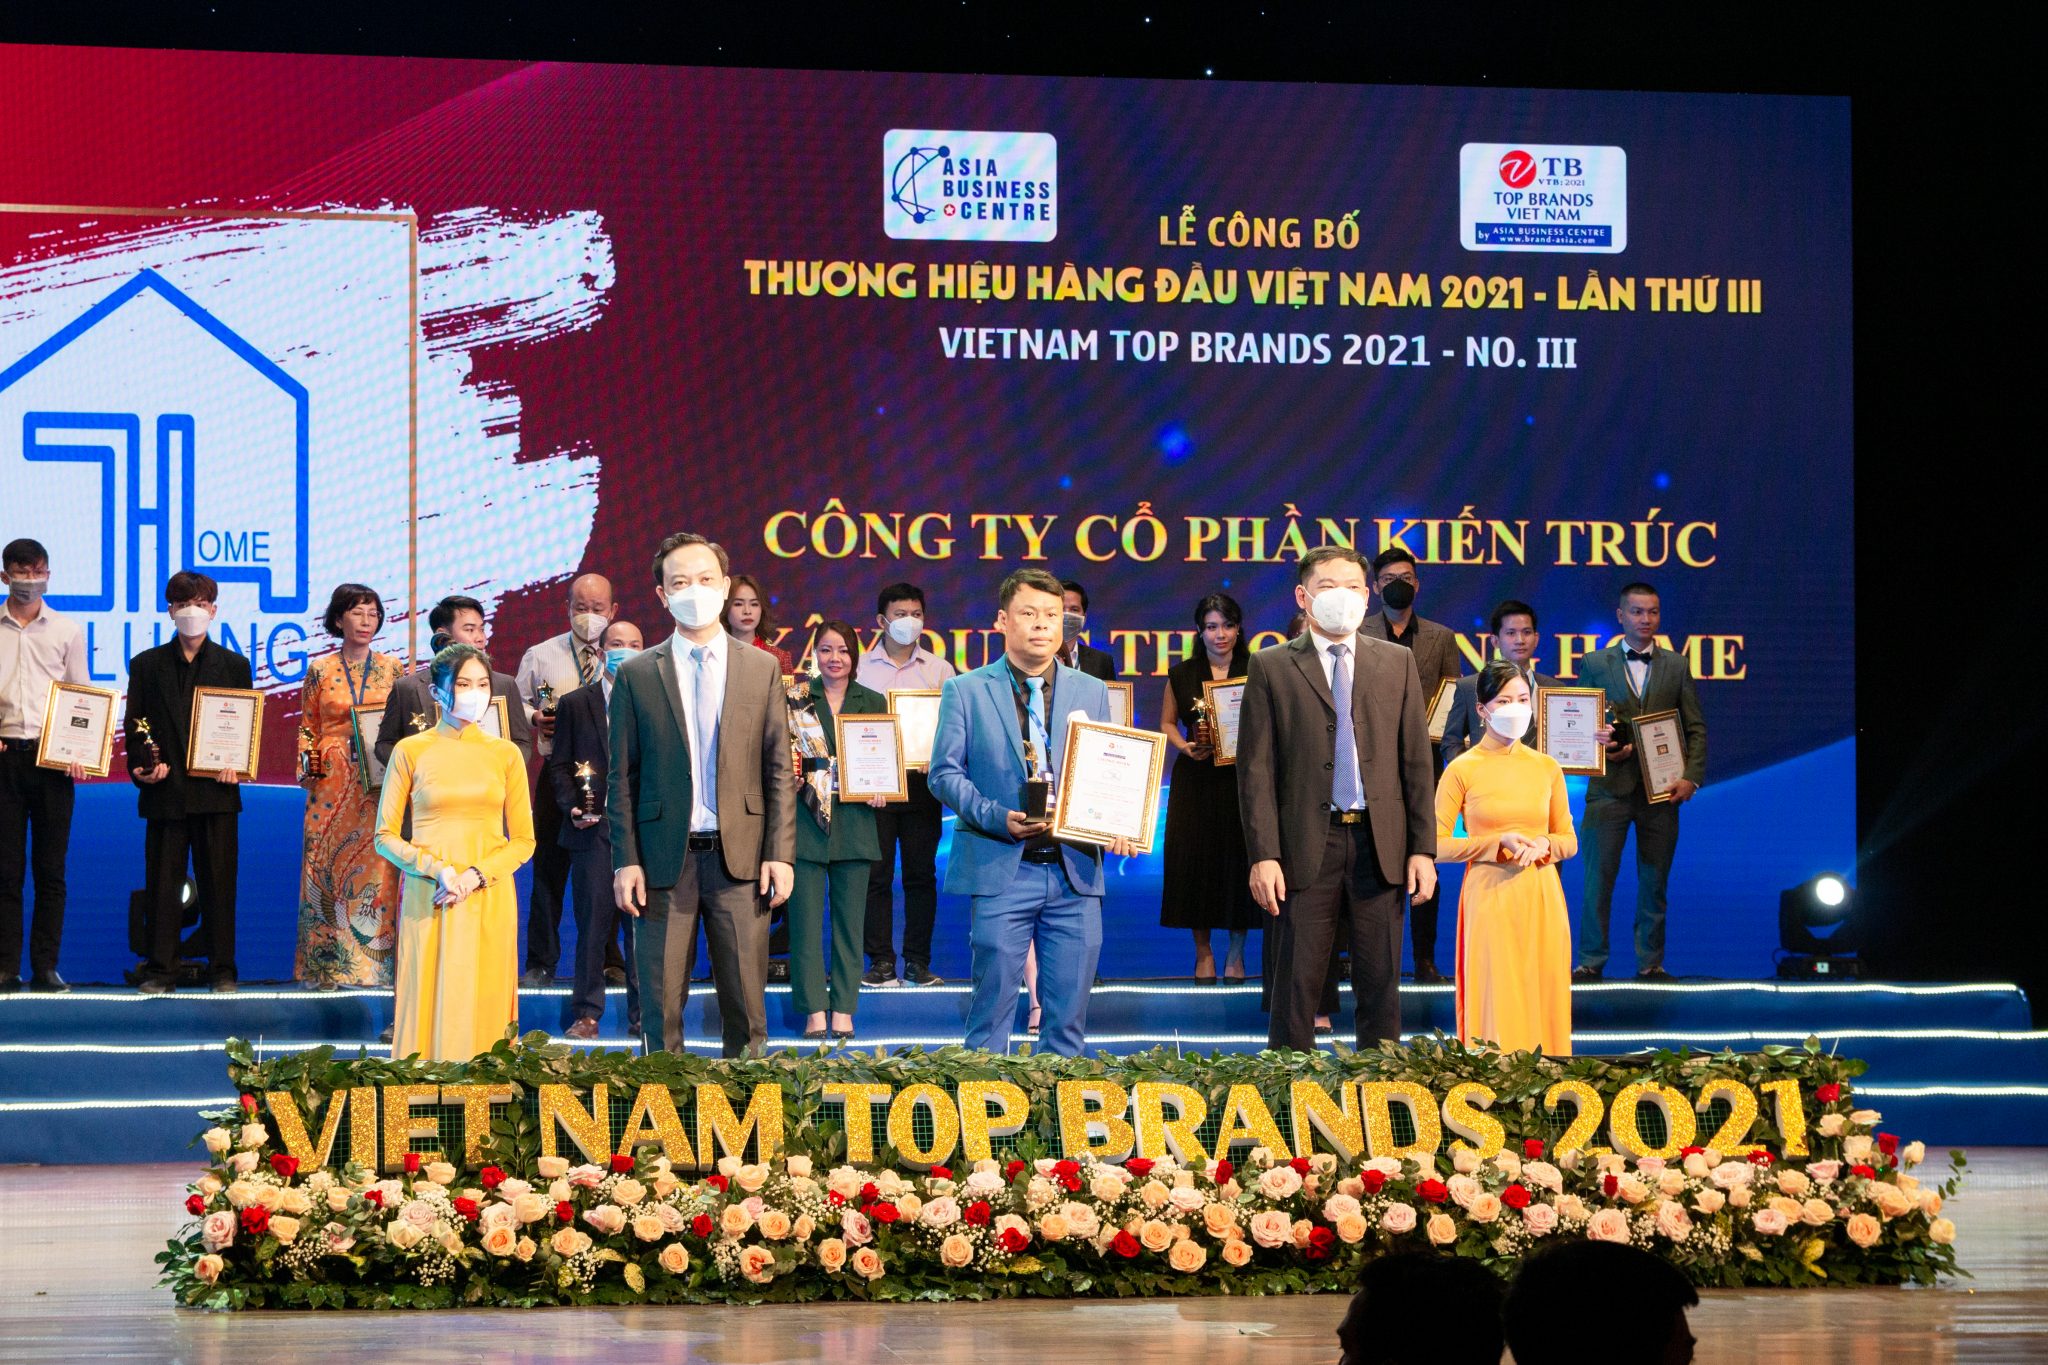 Thảo Lương Home nhận giải thưởng VIETNAM TOP BRANDS 2021